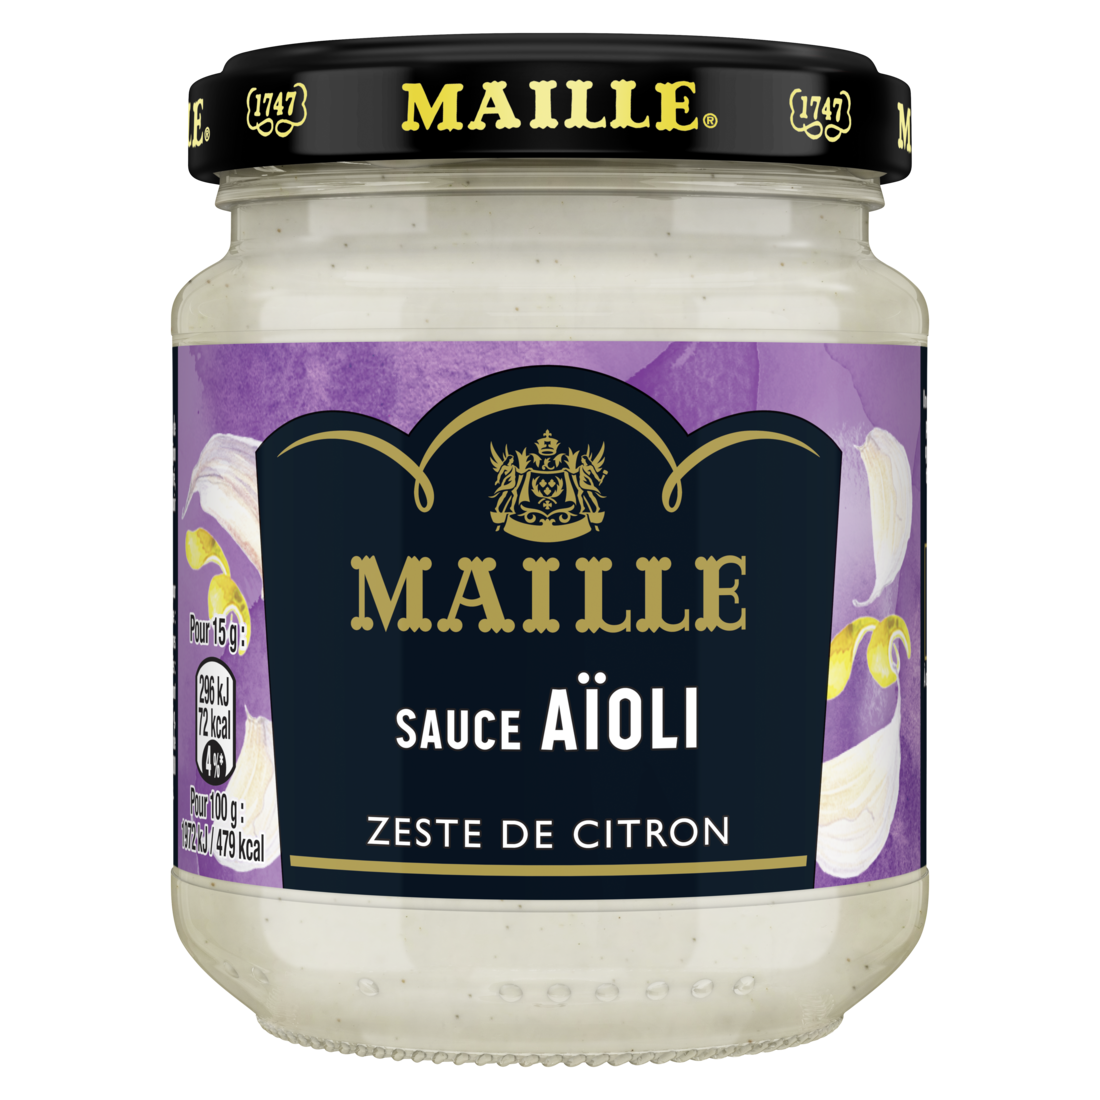 Maille Sauce Aïoli, Zeste de citron, 185 g front